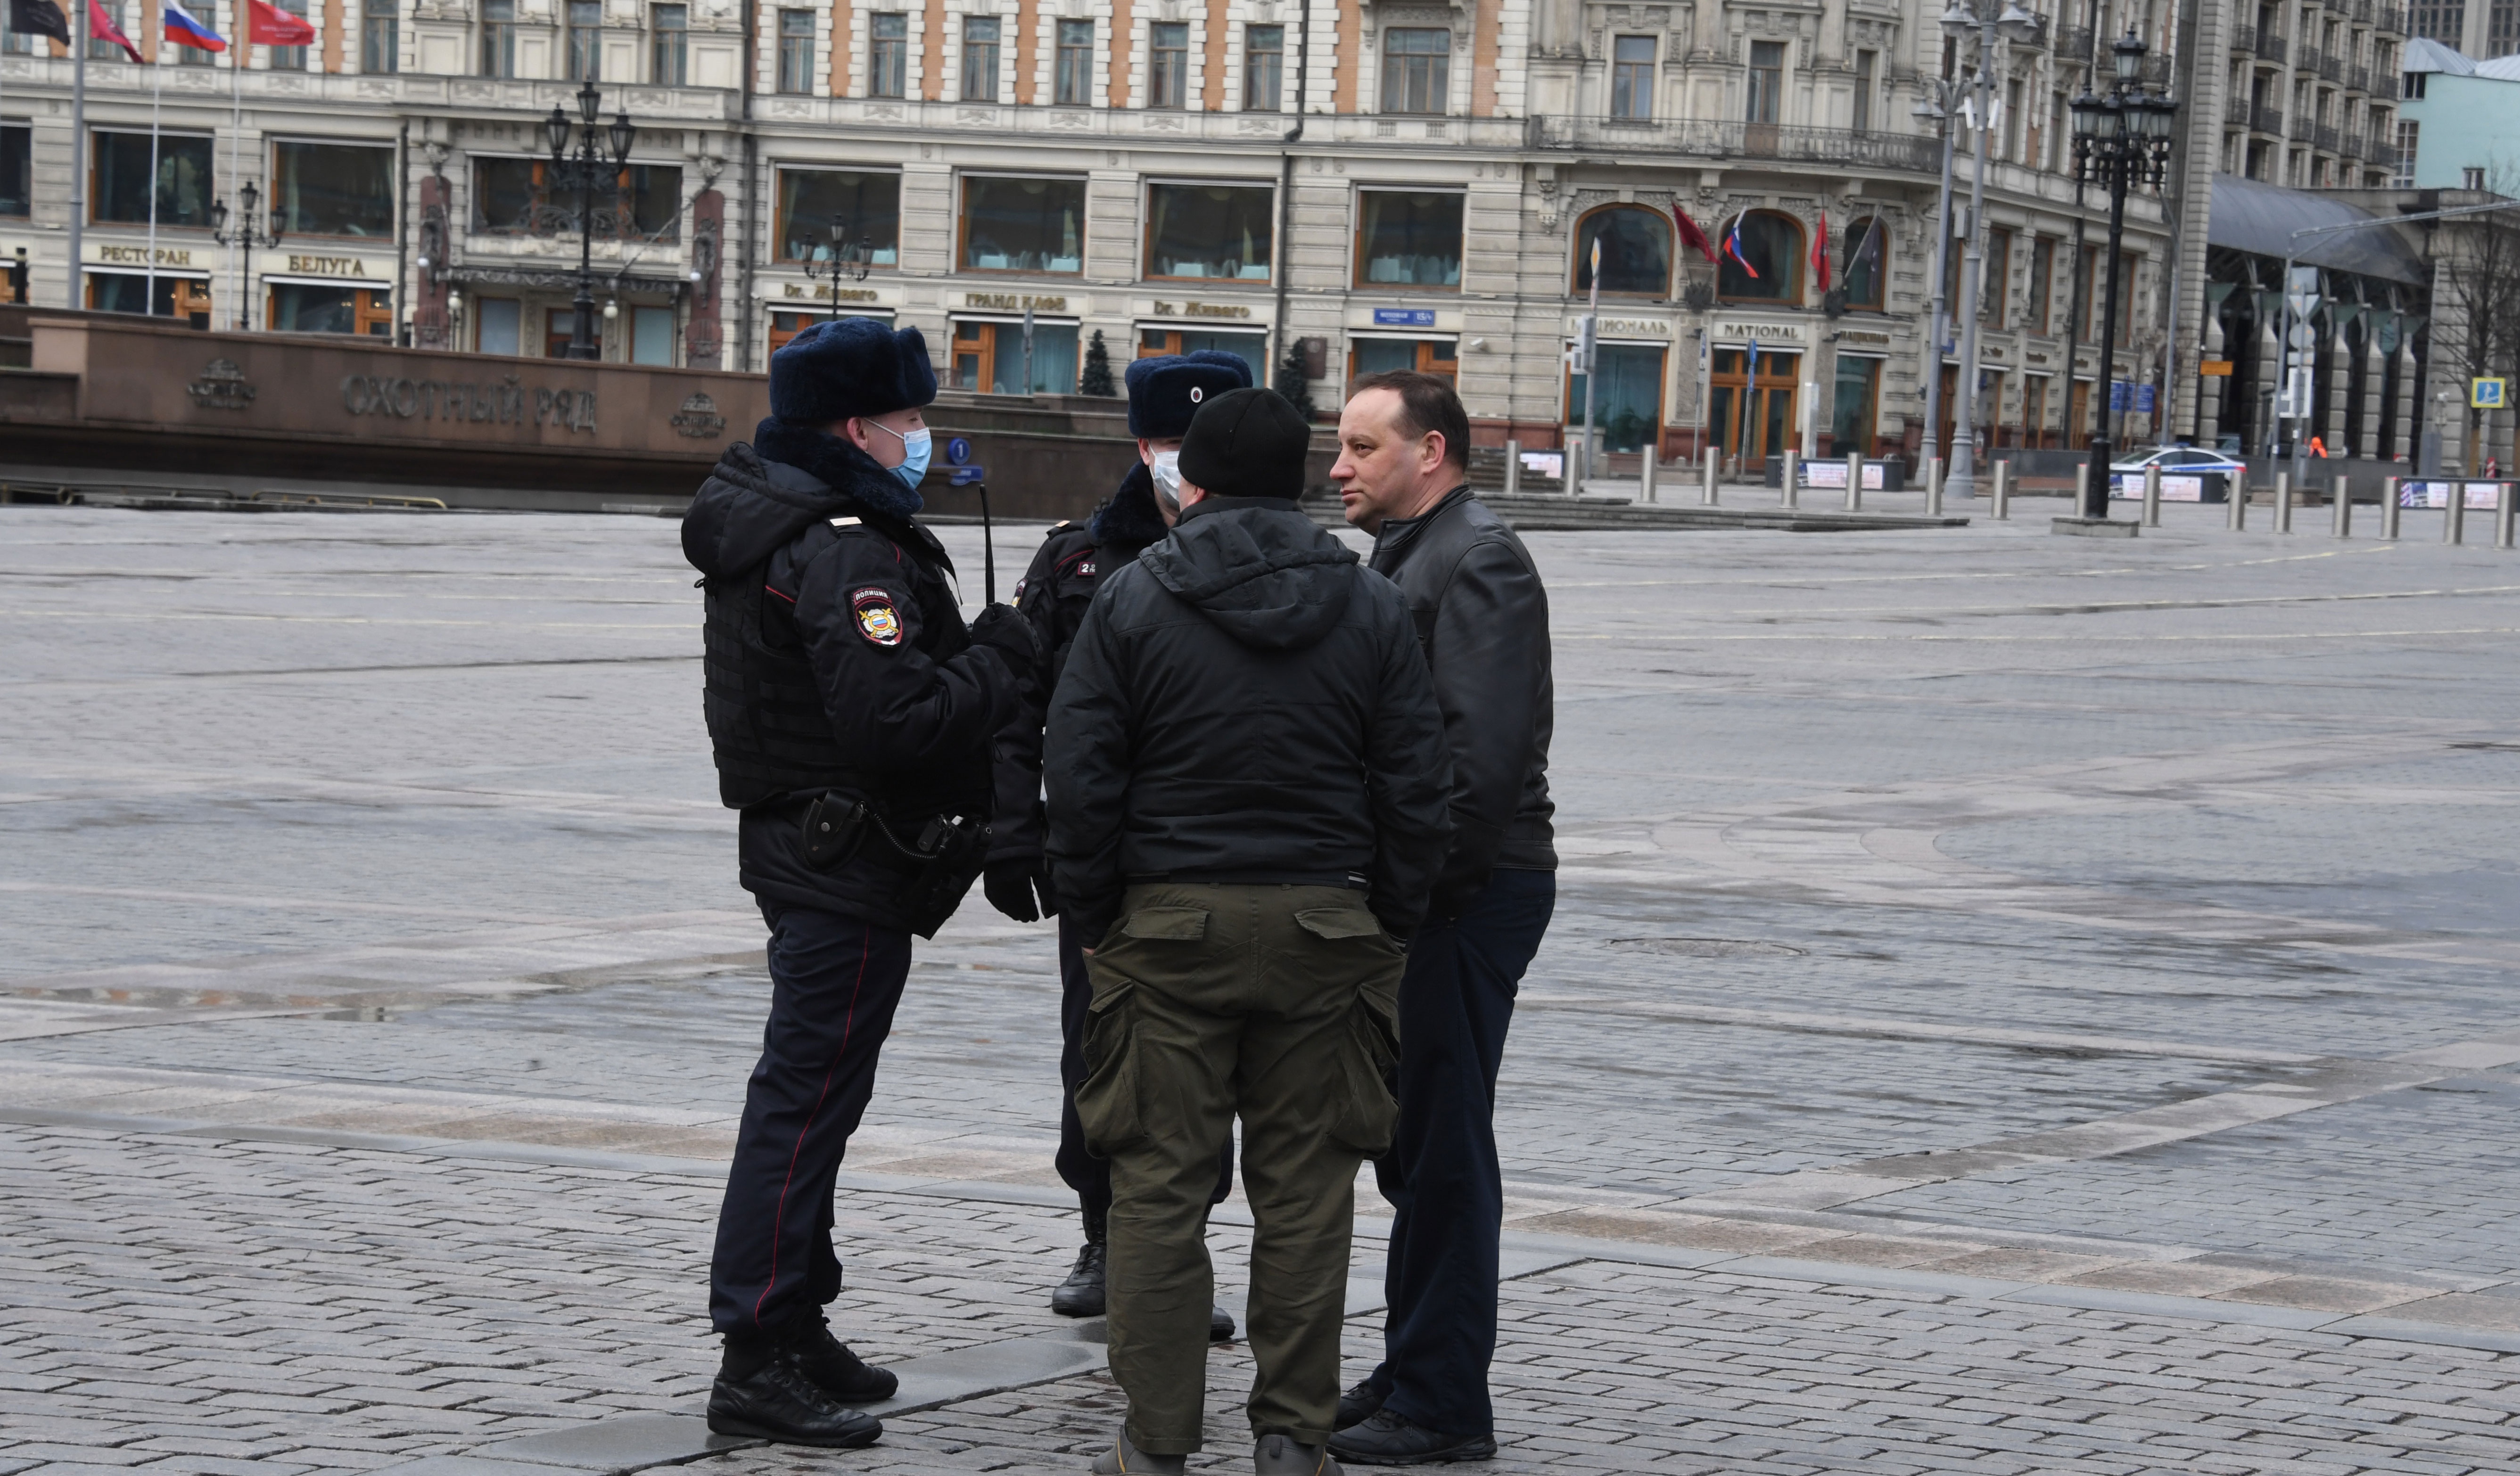 Moscow проверка. Московская мэрия передаст полиции фотографии пользователей.